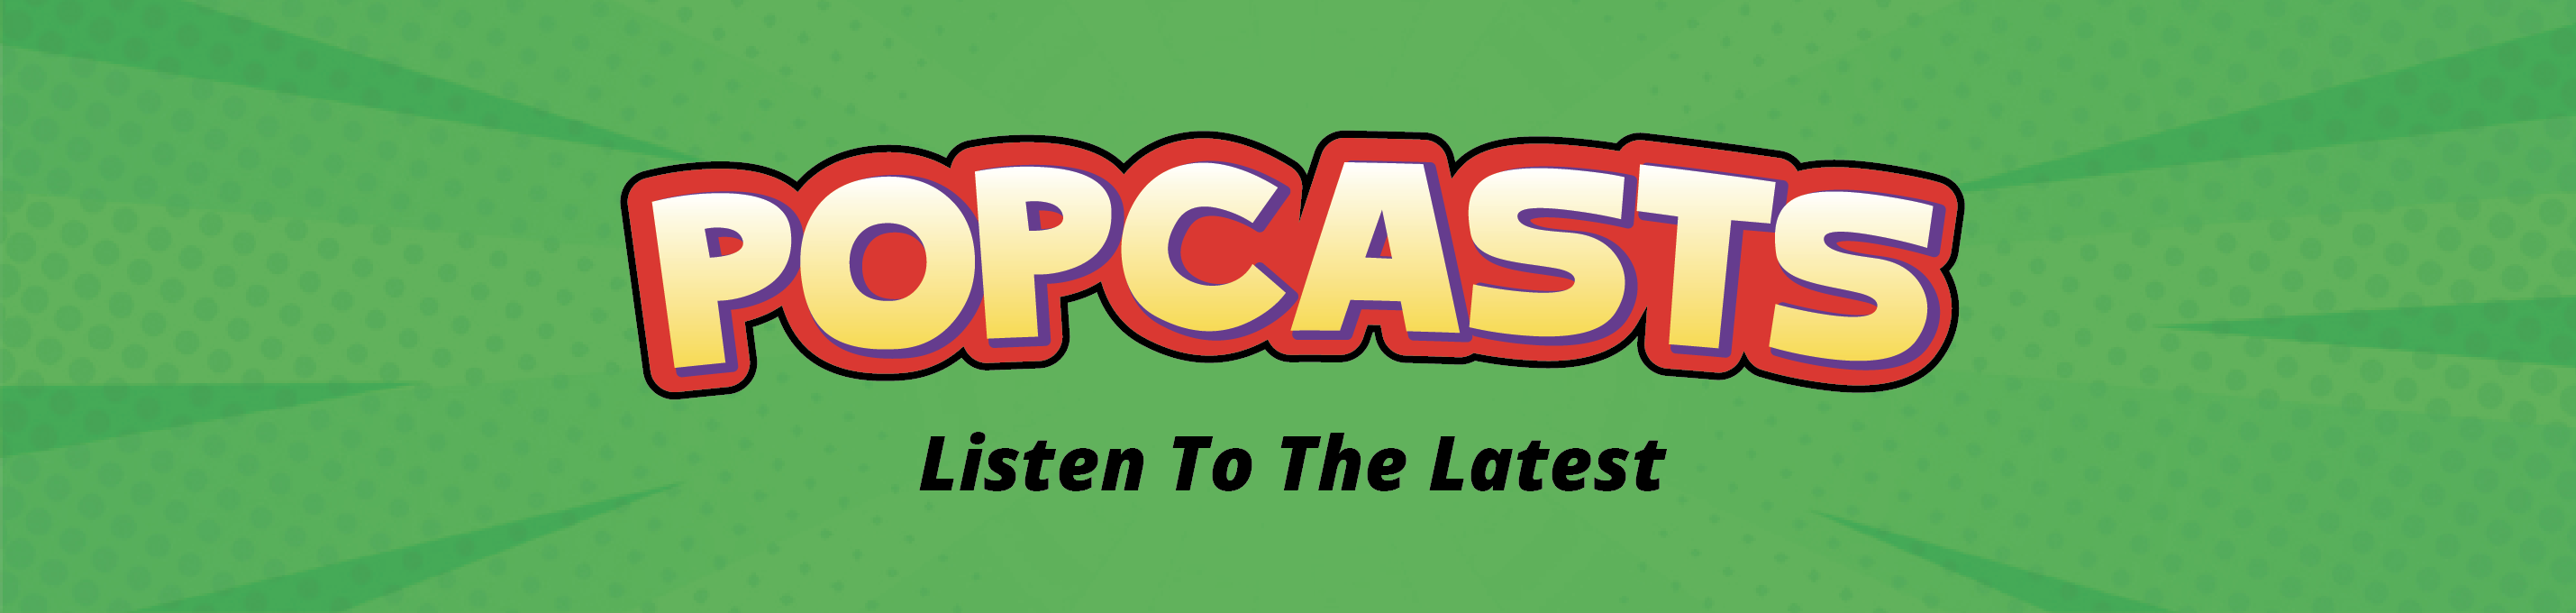 popcast